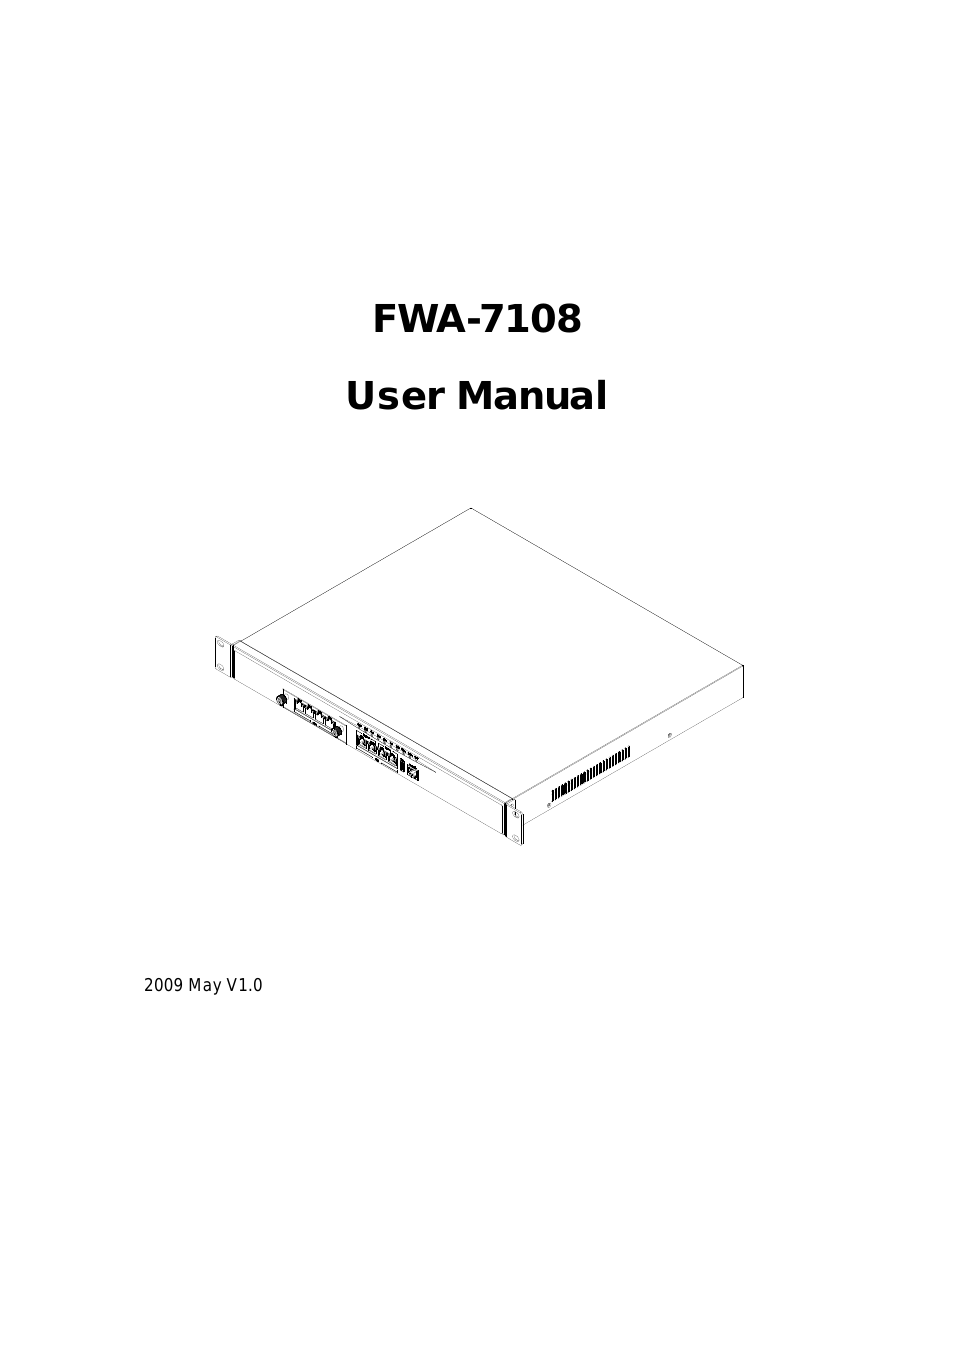 FWA7108